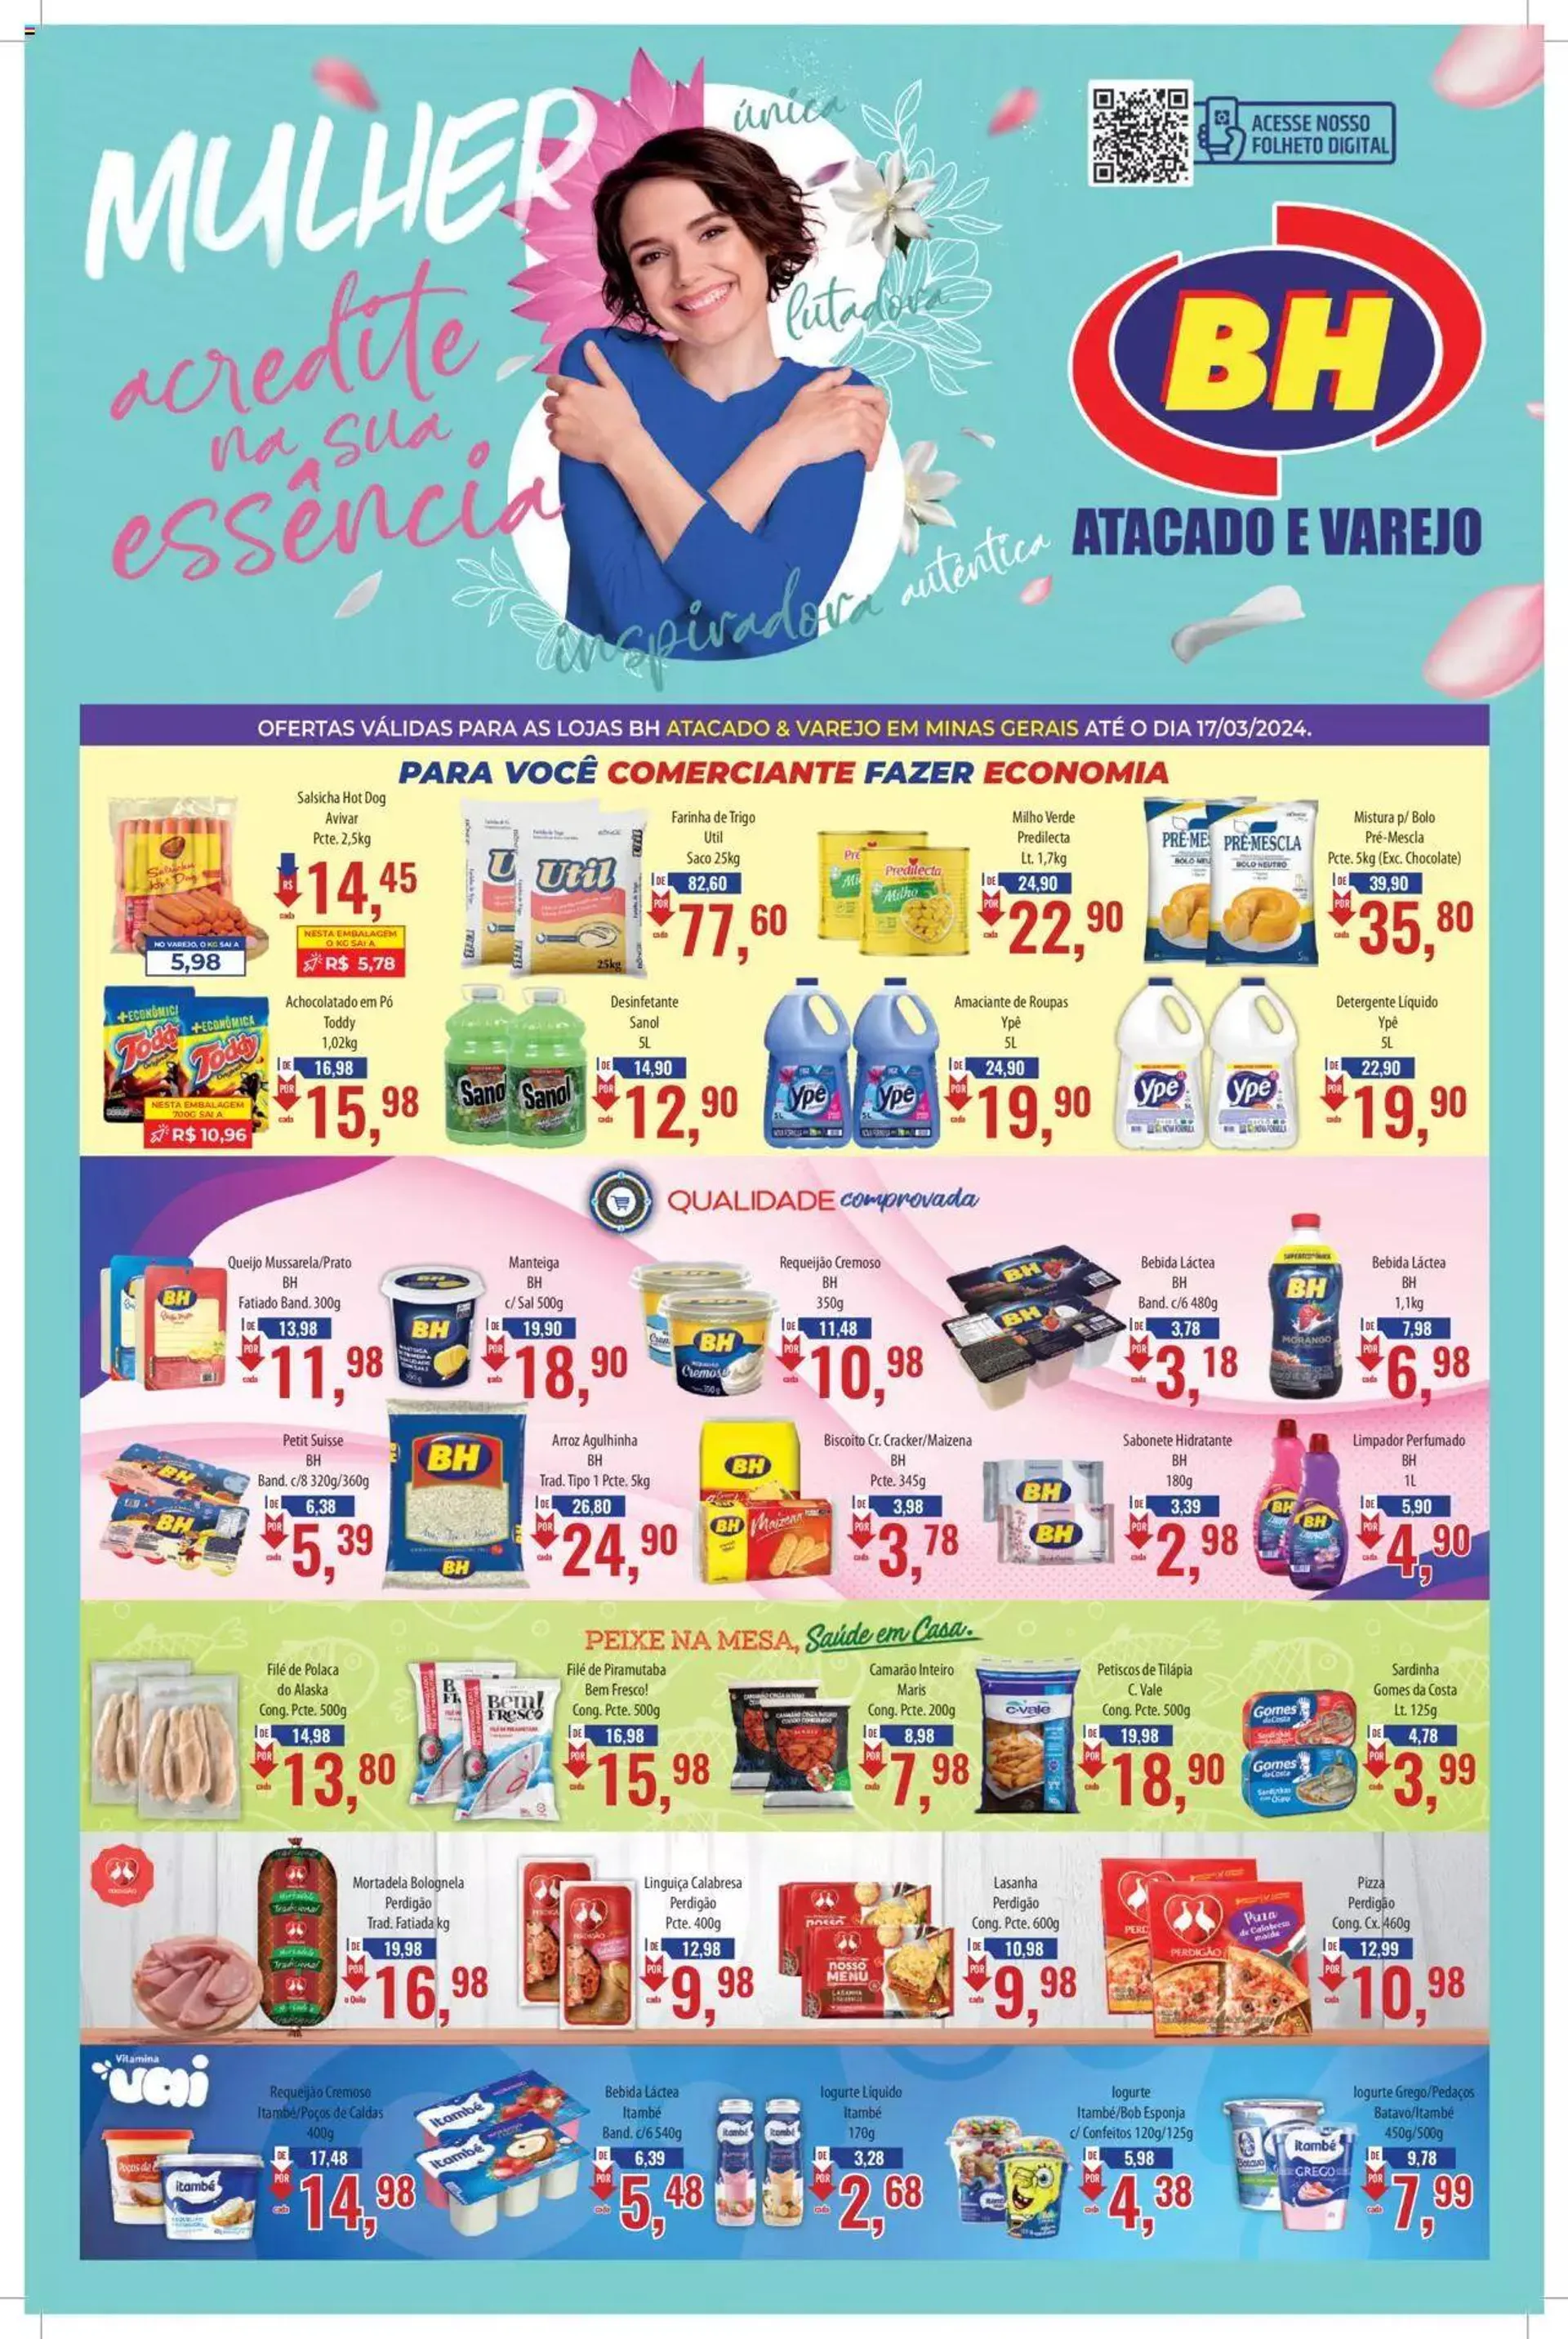 Encarte de Supermercados BH - Ofertas da semana 1 de março até 17 de março 2024 - Pagina 1